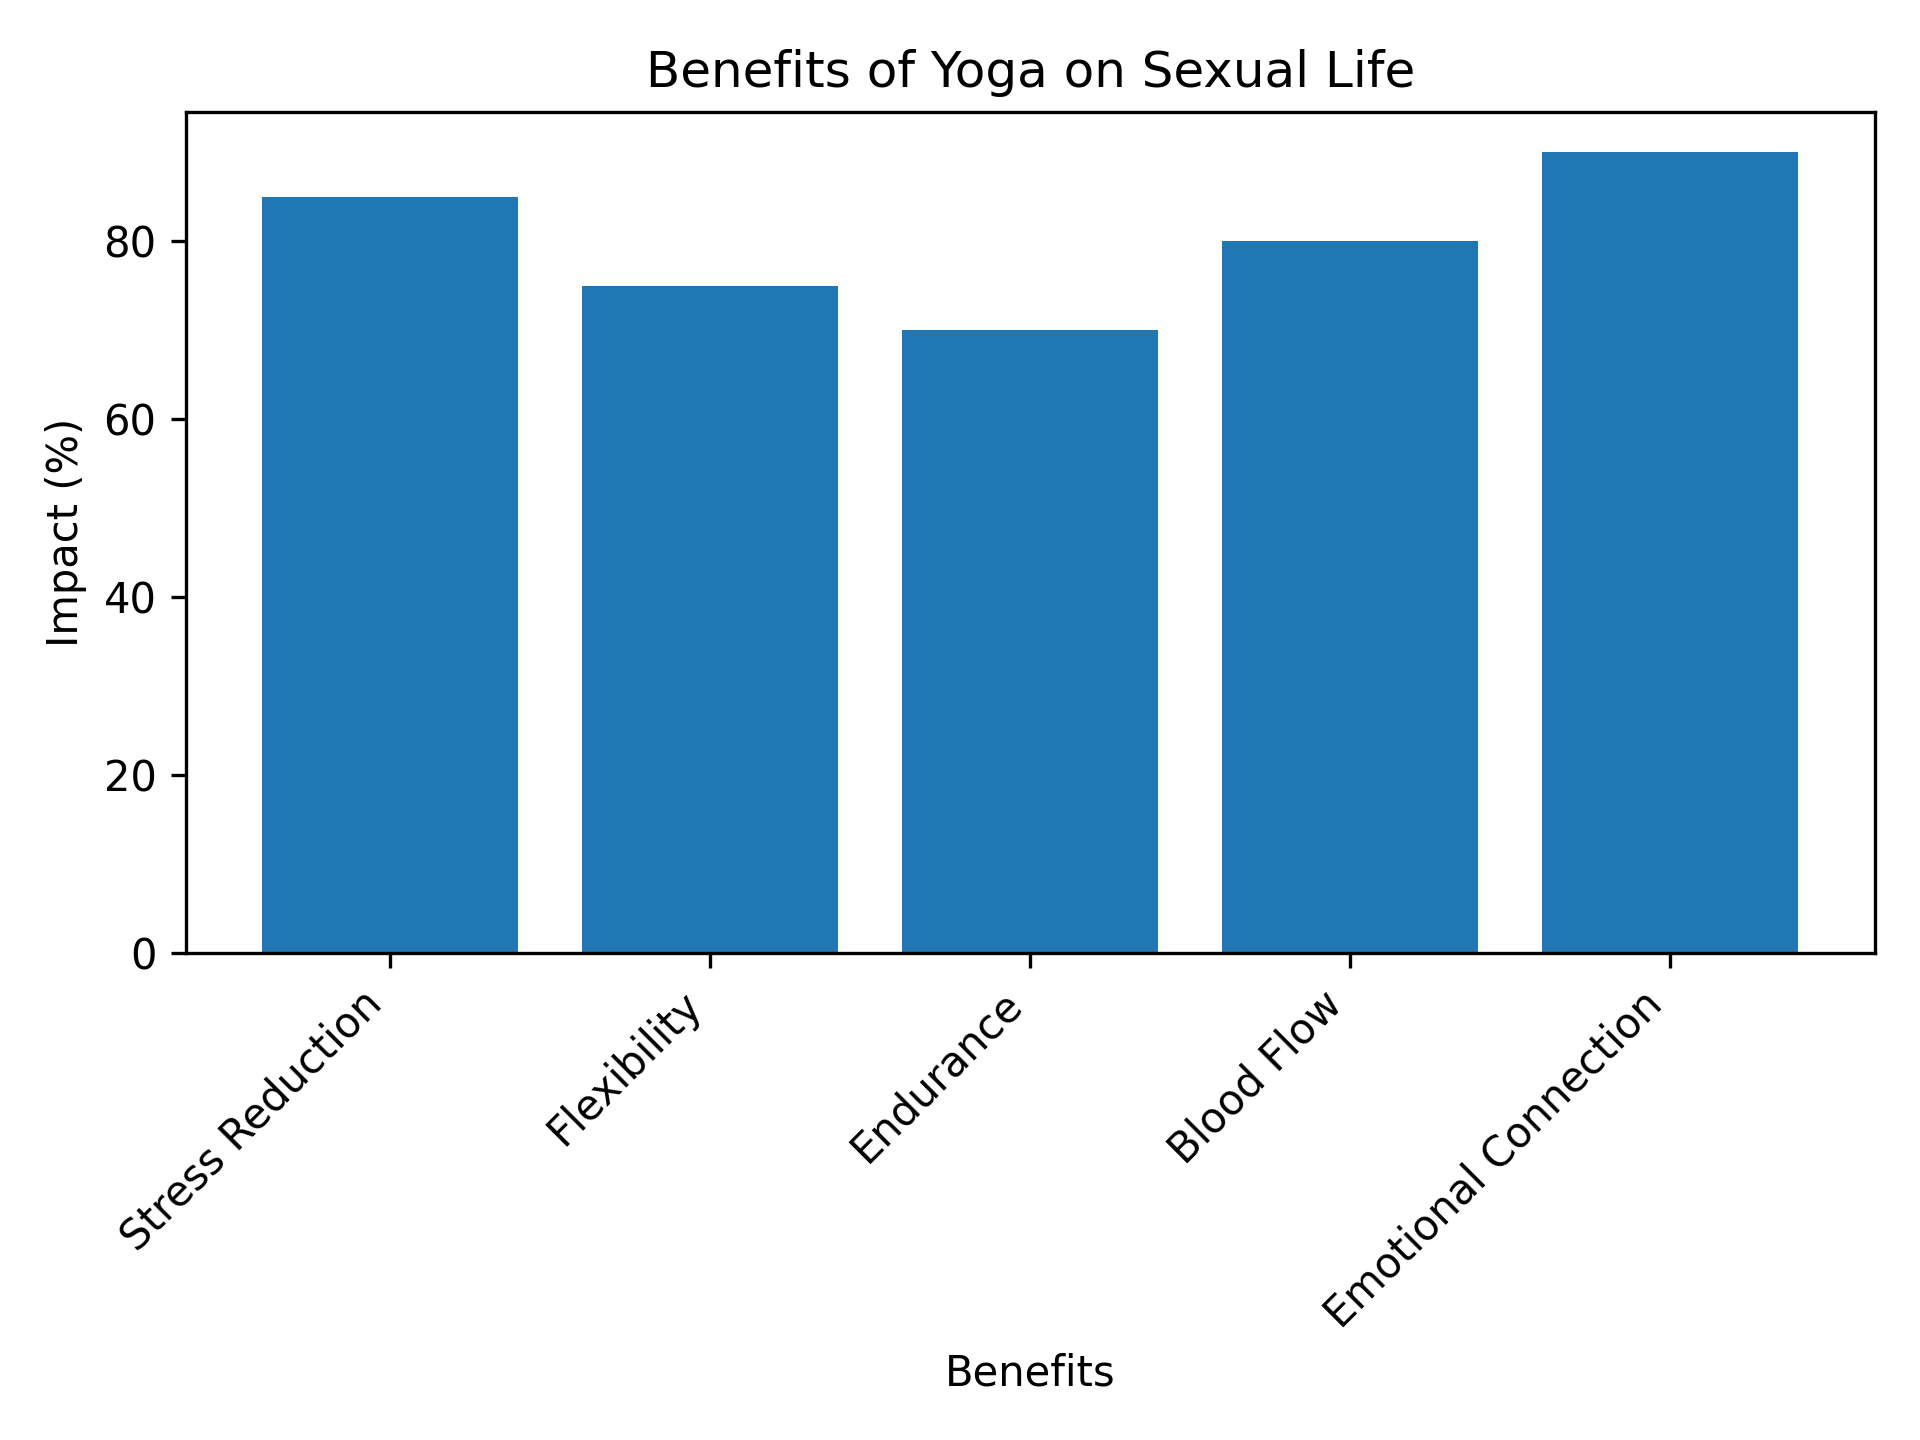 Benefits of Yoga on Sexual Life